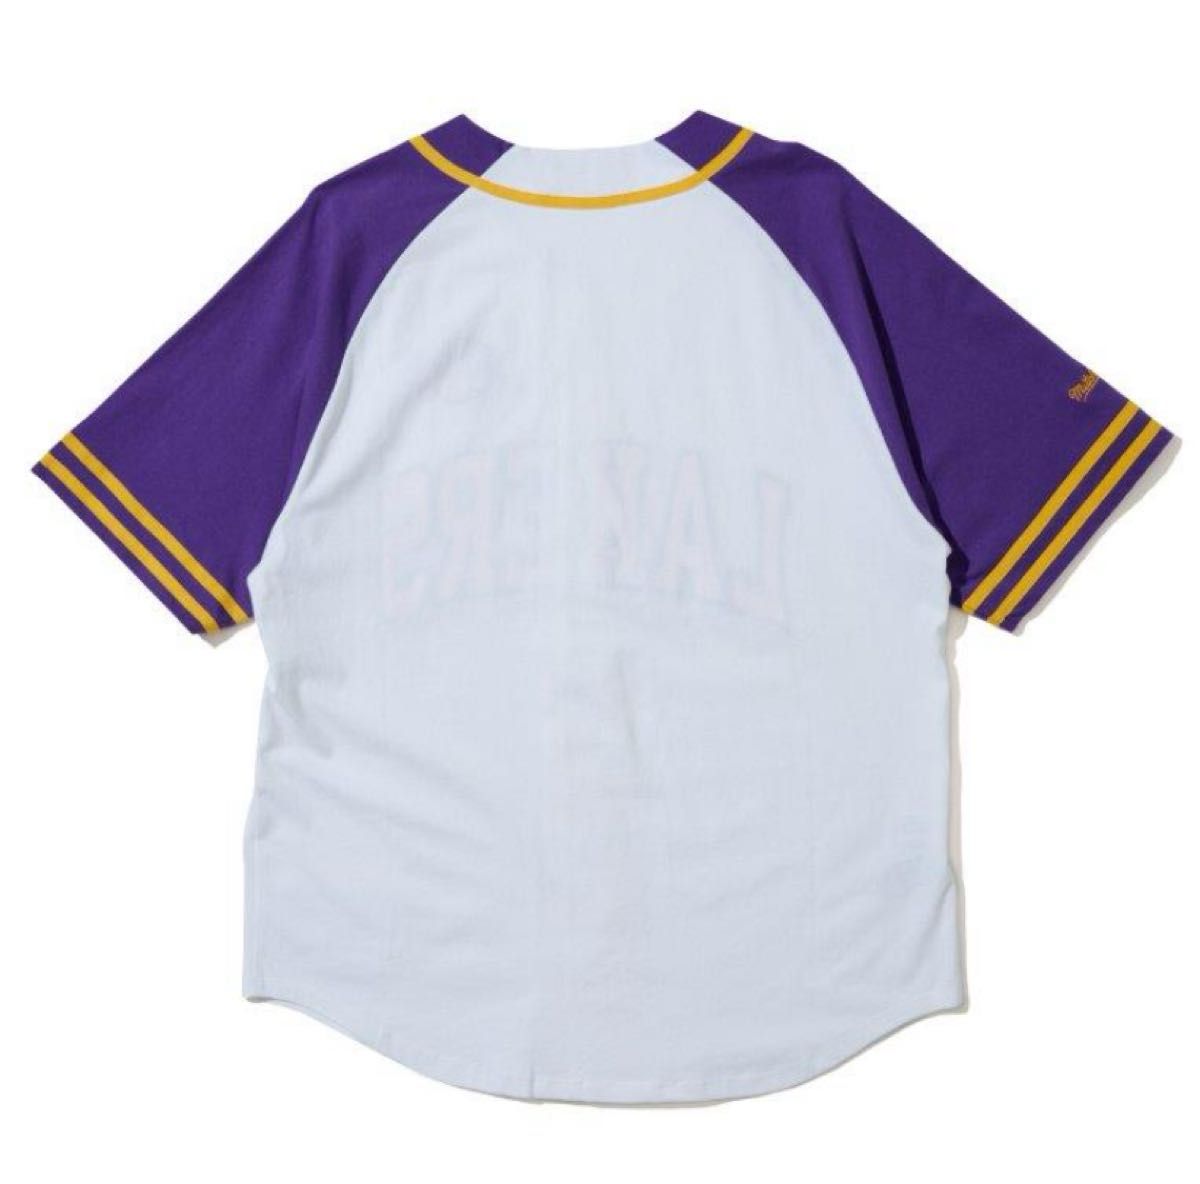 完売品 美品 NBA ベースボールシャツ ミッチェルアンドネス レイカーズ LAKERS コービー ジョーダン ナイキ NIKE